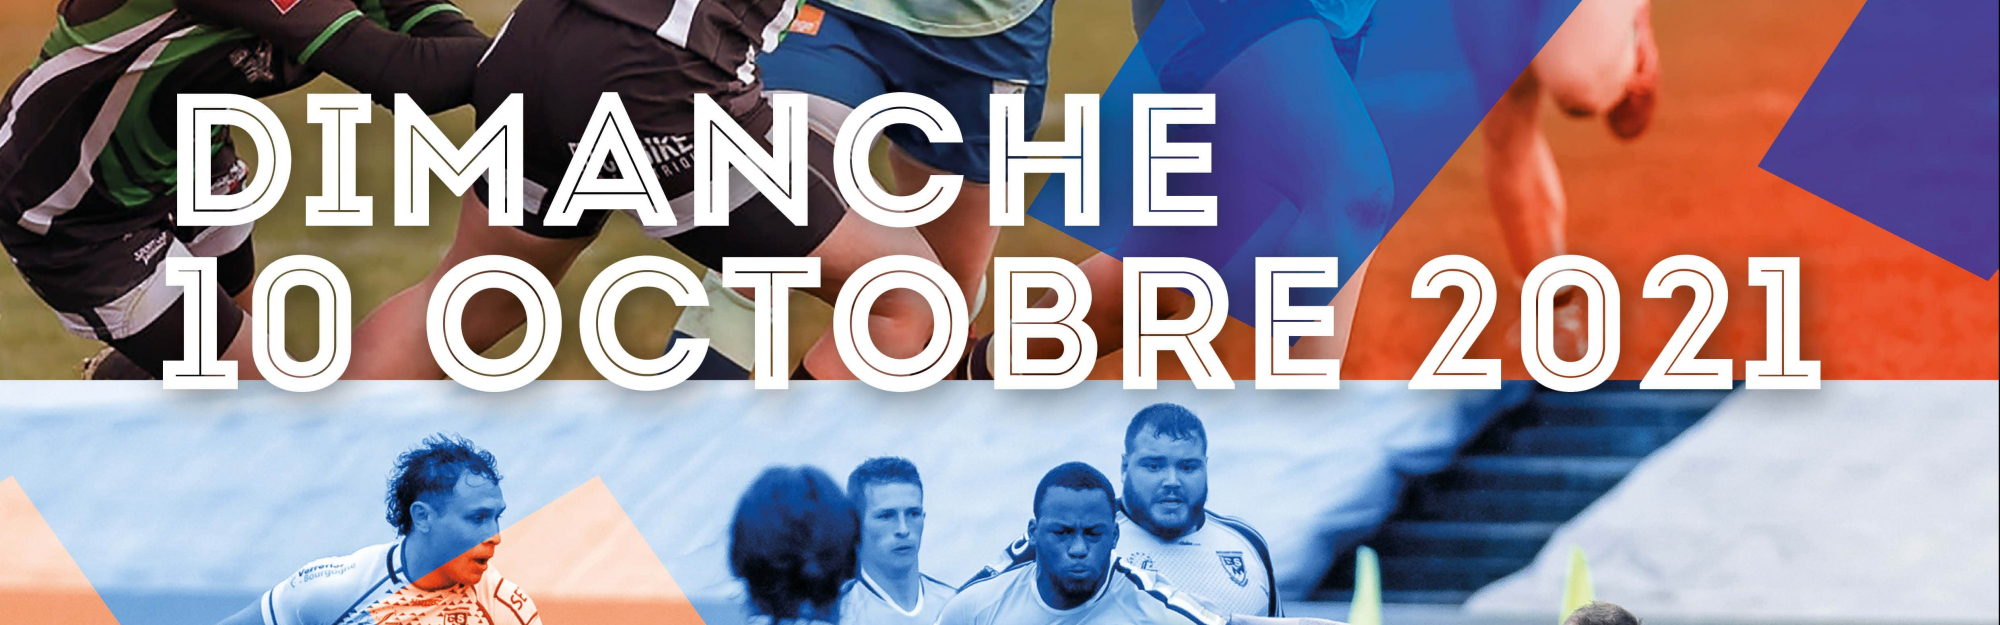 Le 10 octobre prochain, la Métropole Européenne de Lille propose une journée exceptionnelle dédiée au rugby au Stadium